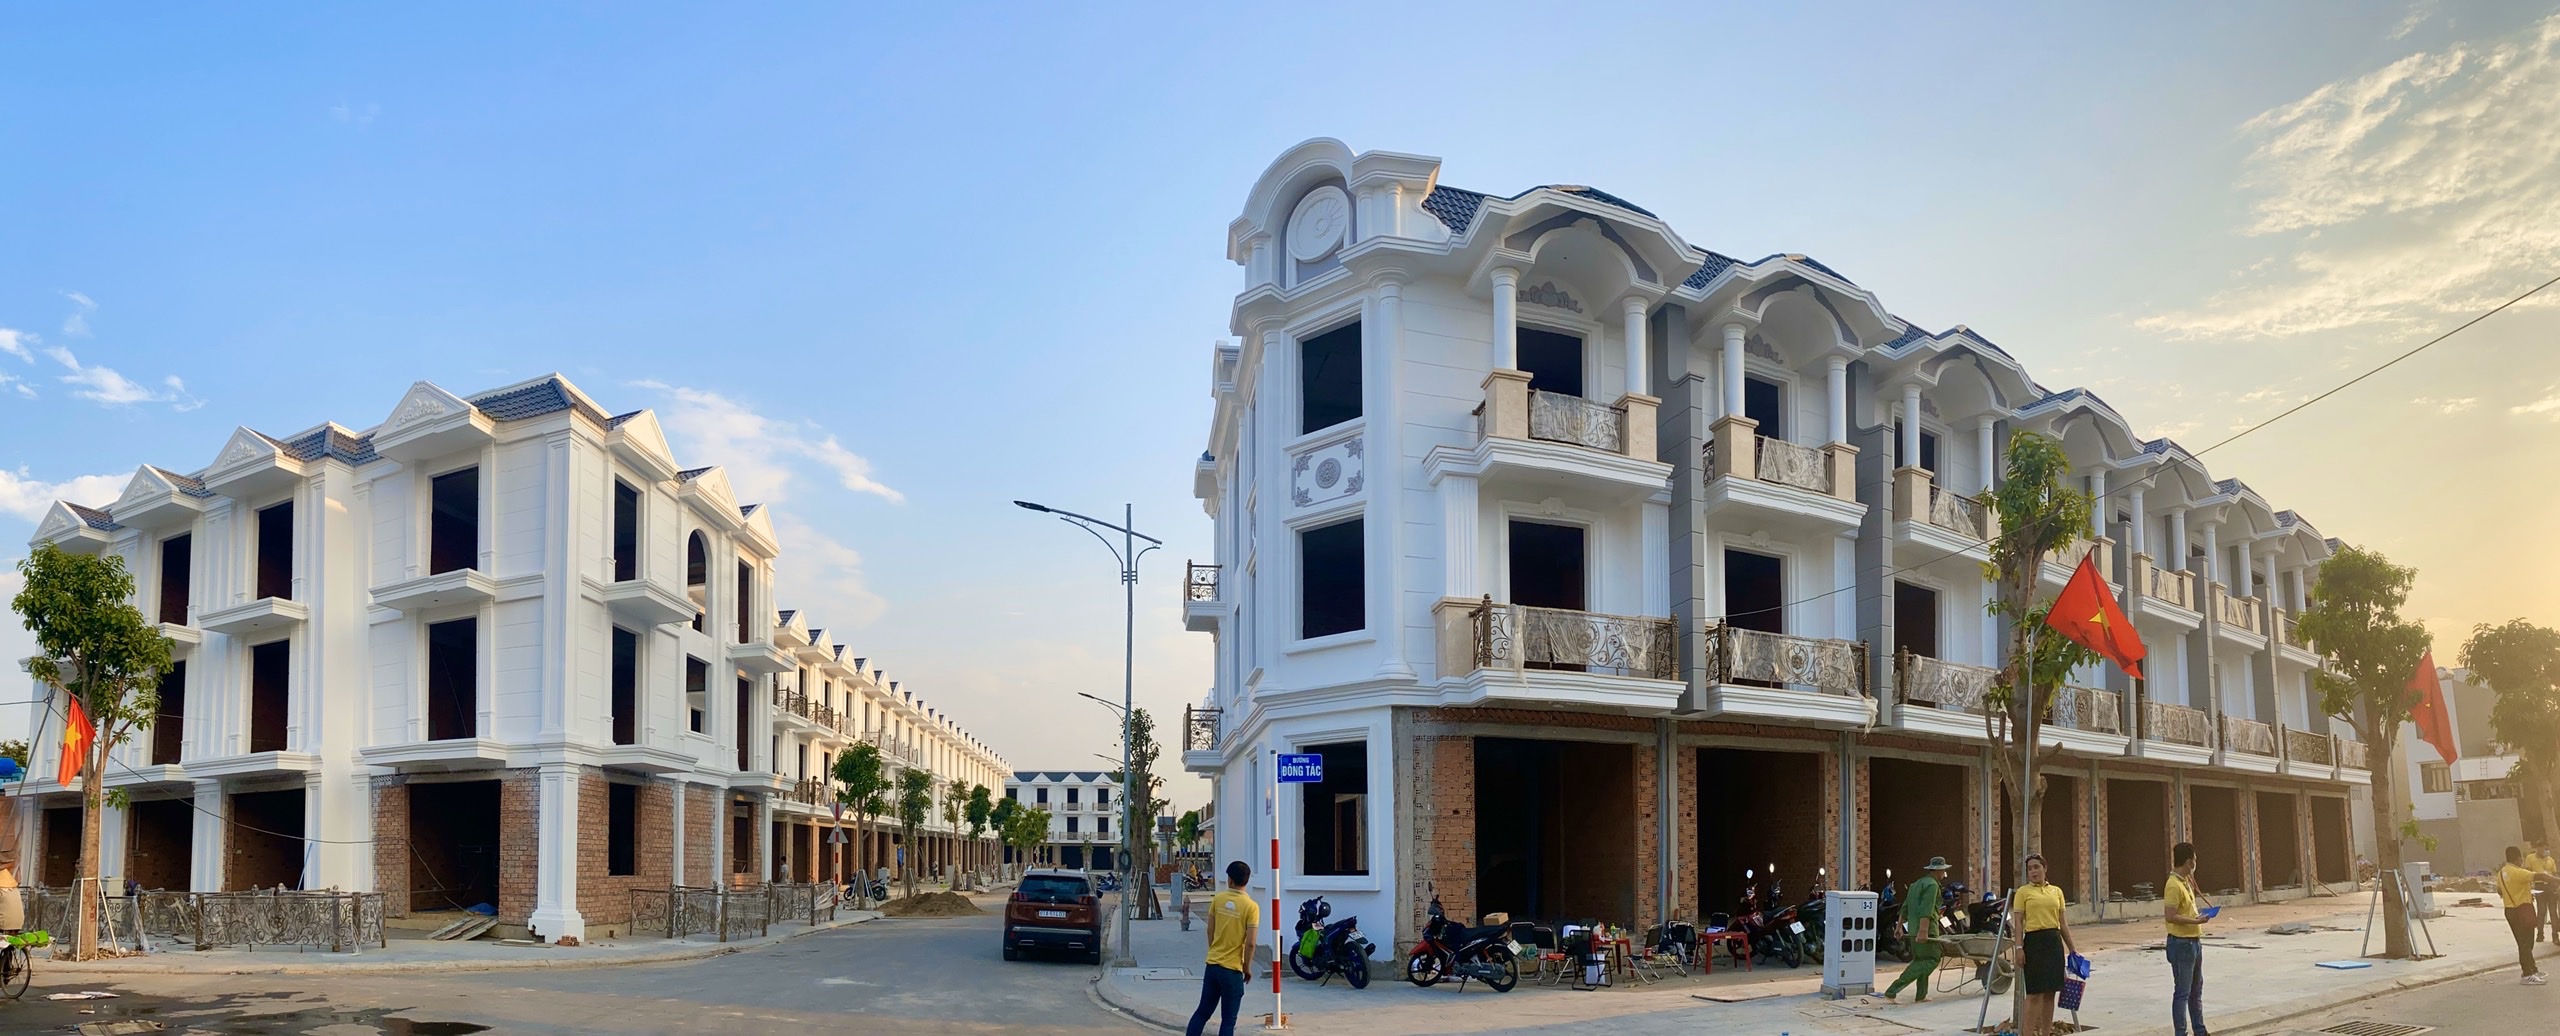 Hoàn thiện nội thất Dự án nhà phố Cite Damour Đông Hưng, Di An, Bình Dương